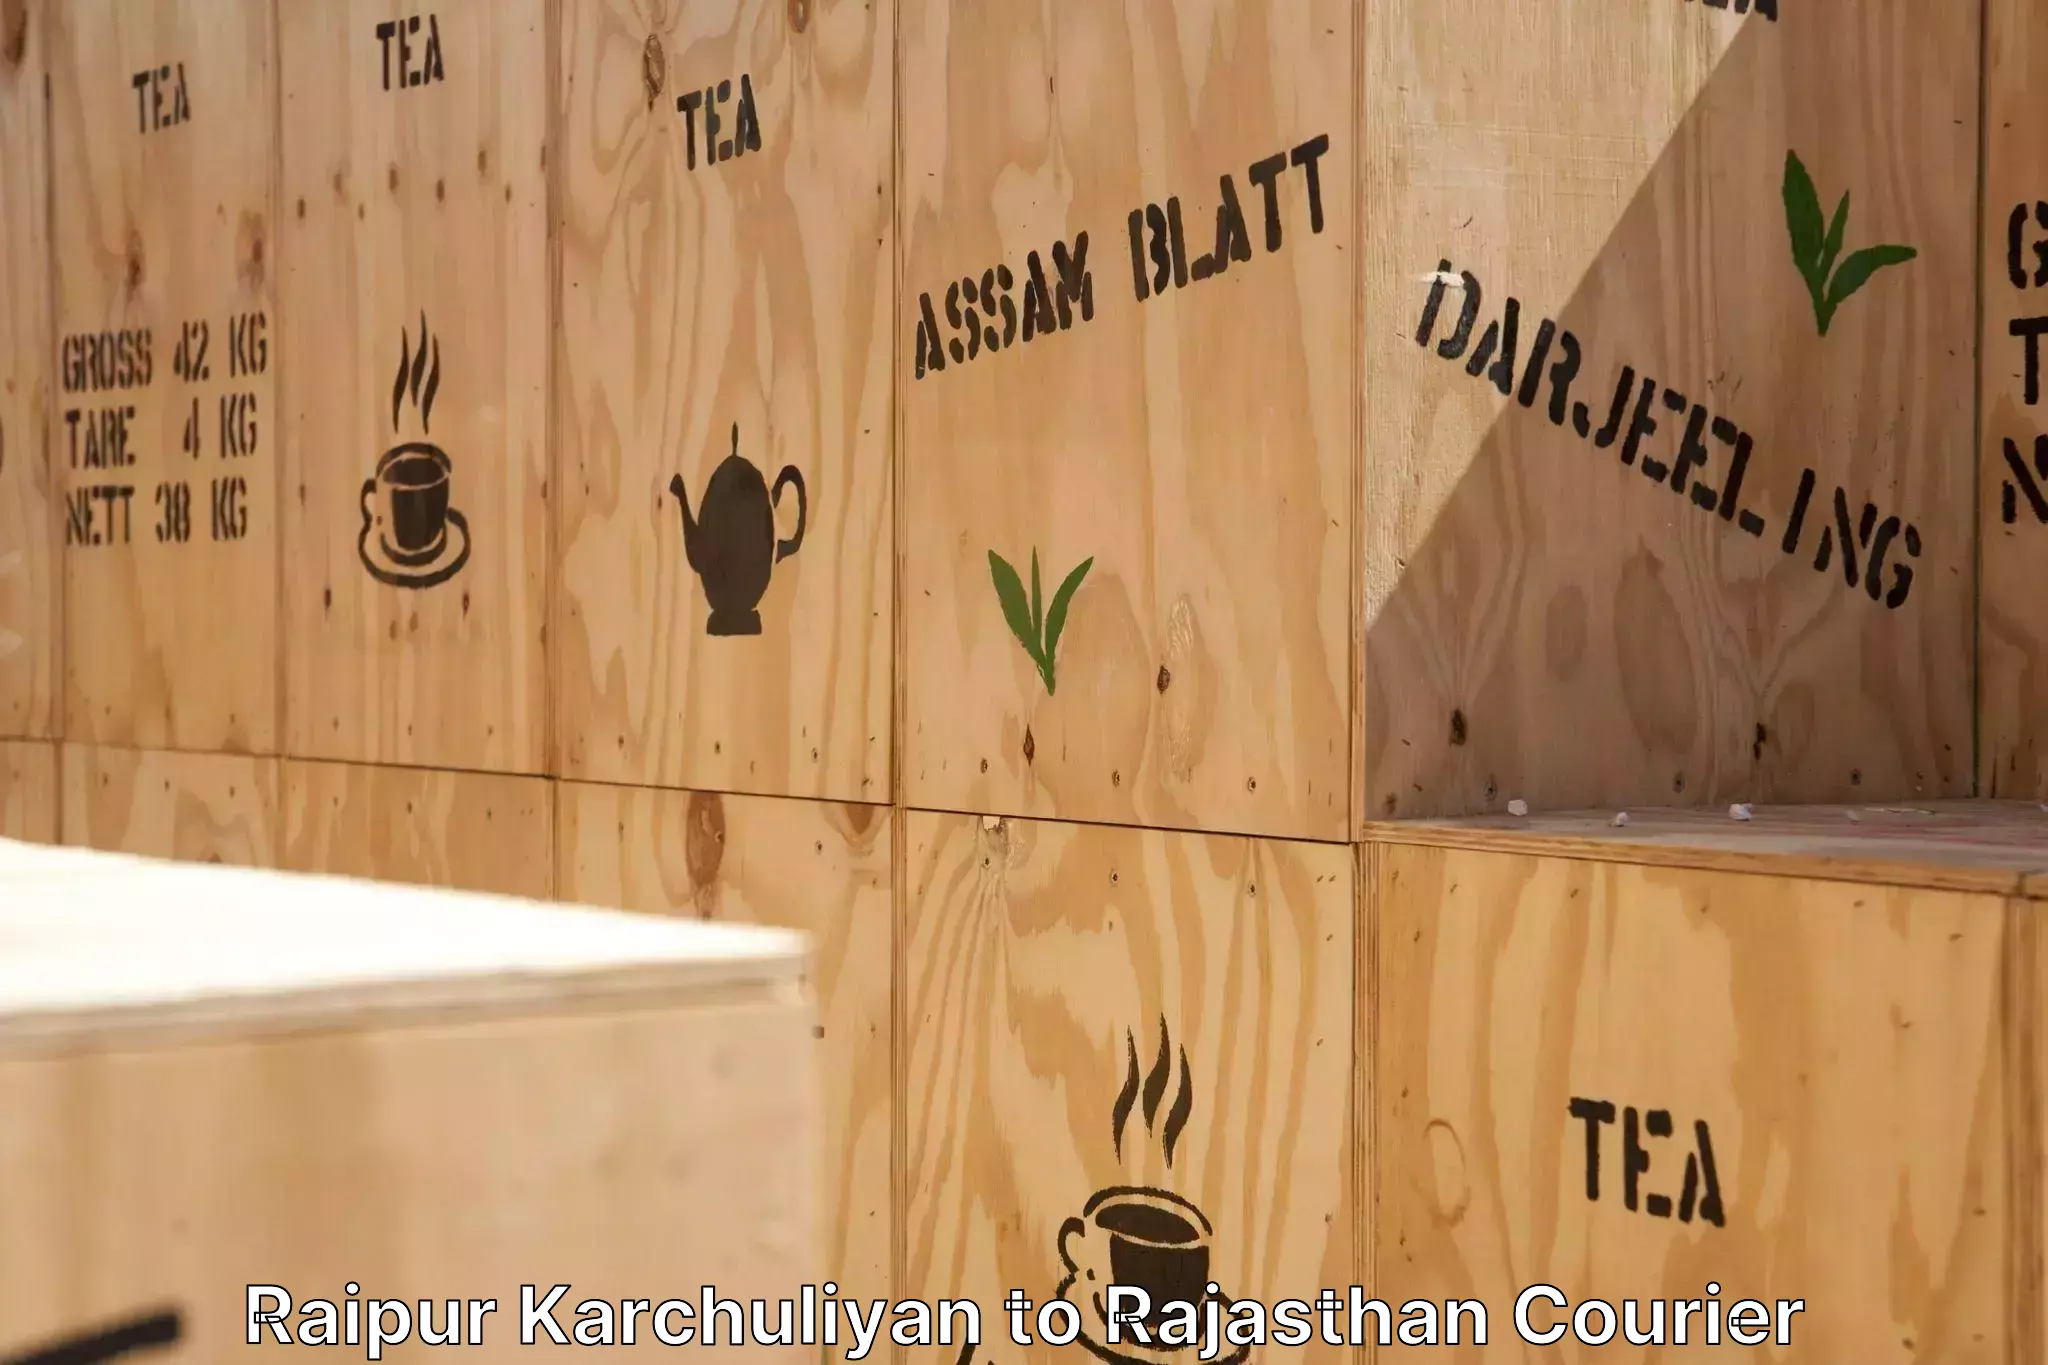 Furniture moving experts Raipur Karchuliyan to Hindaun